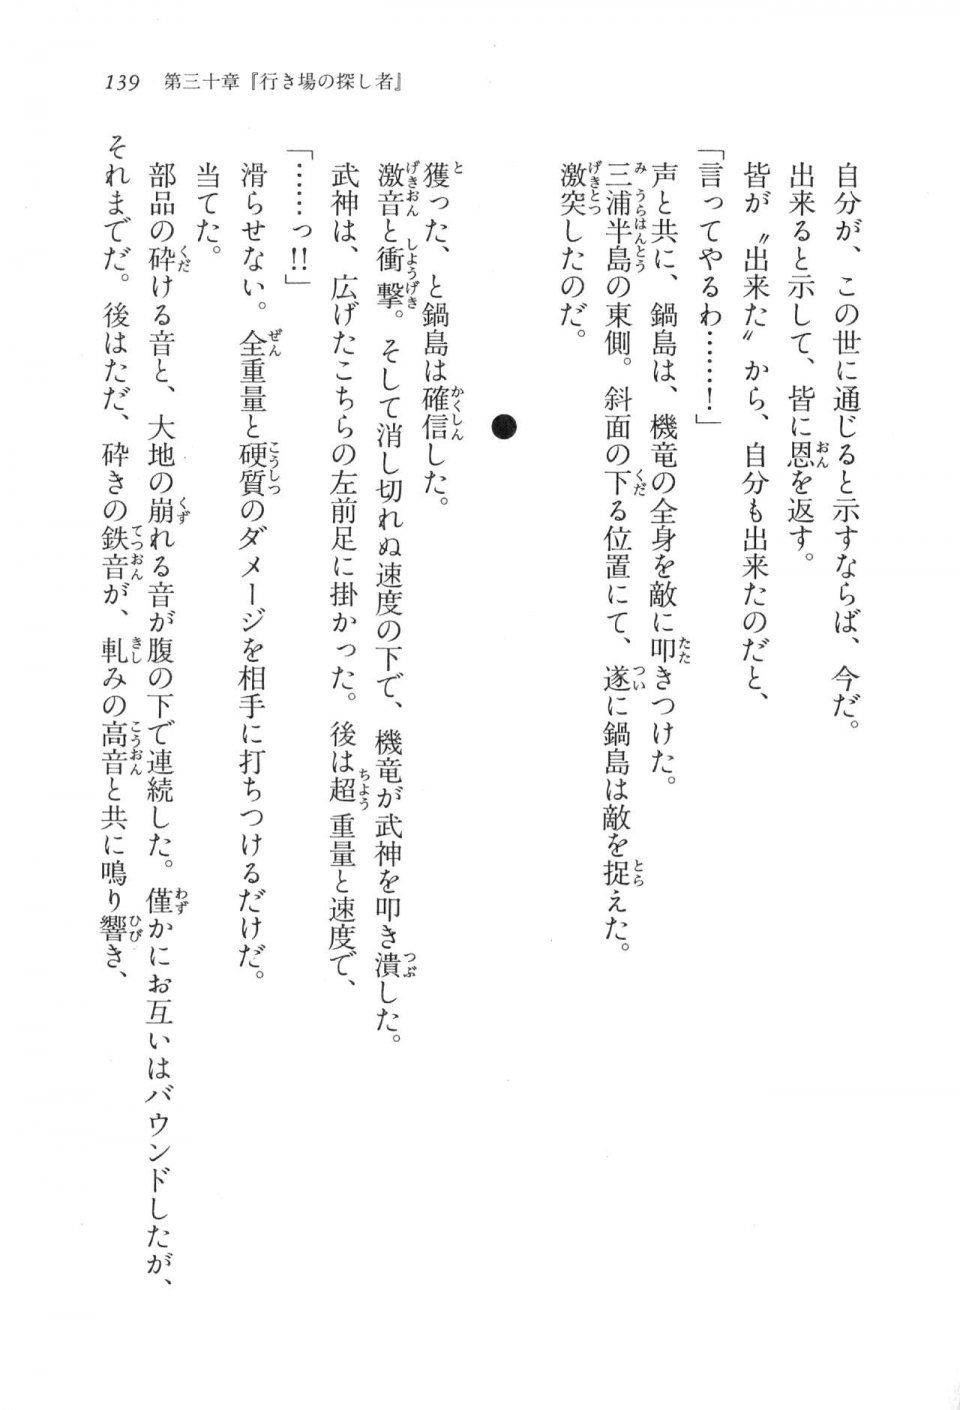 Kyoukai Senjou no Horizon LN Vol 17(7B) - Photo #139